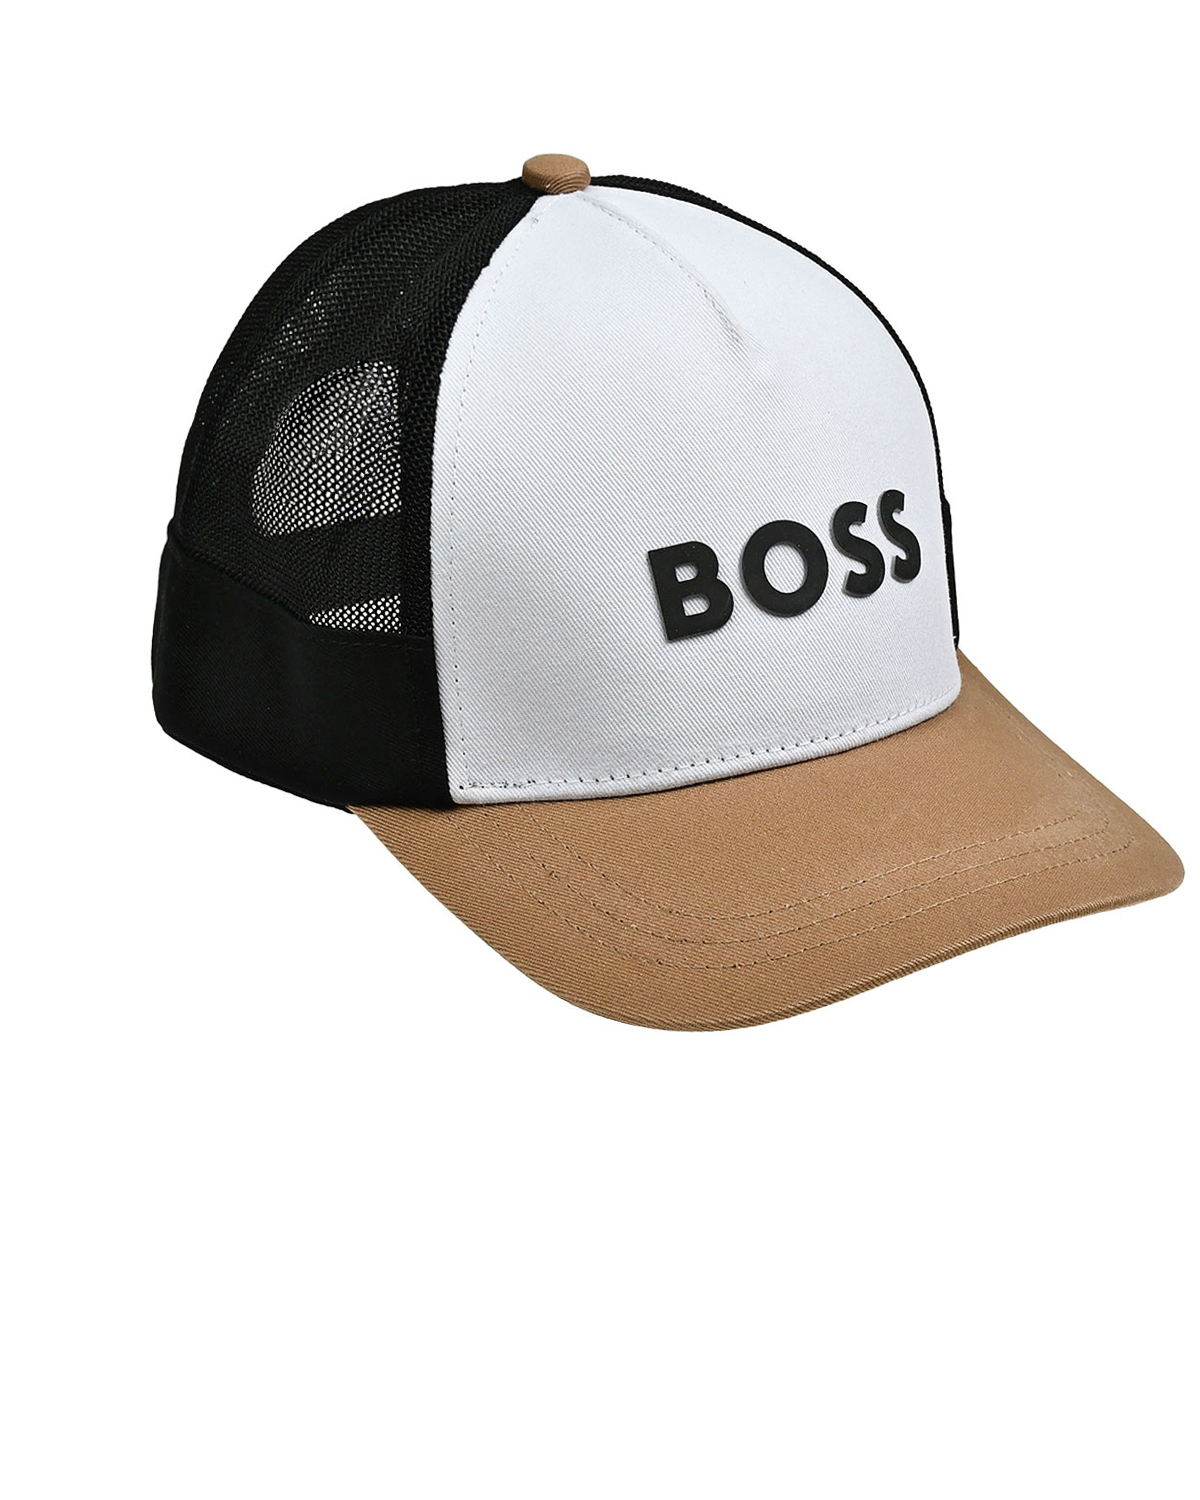 Бейсболка с черным логотипом BOSS, размер 52, цвет нет цвета - фото 1